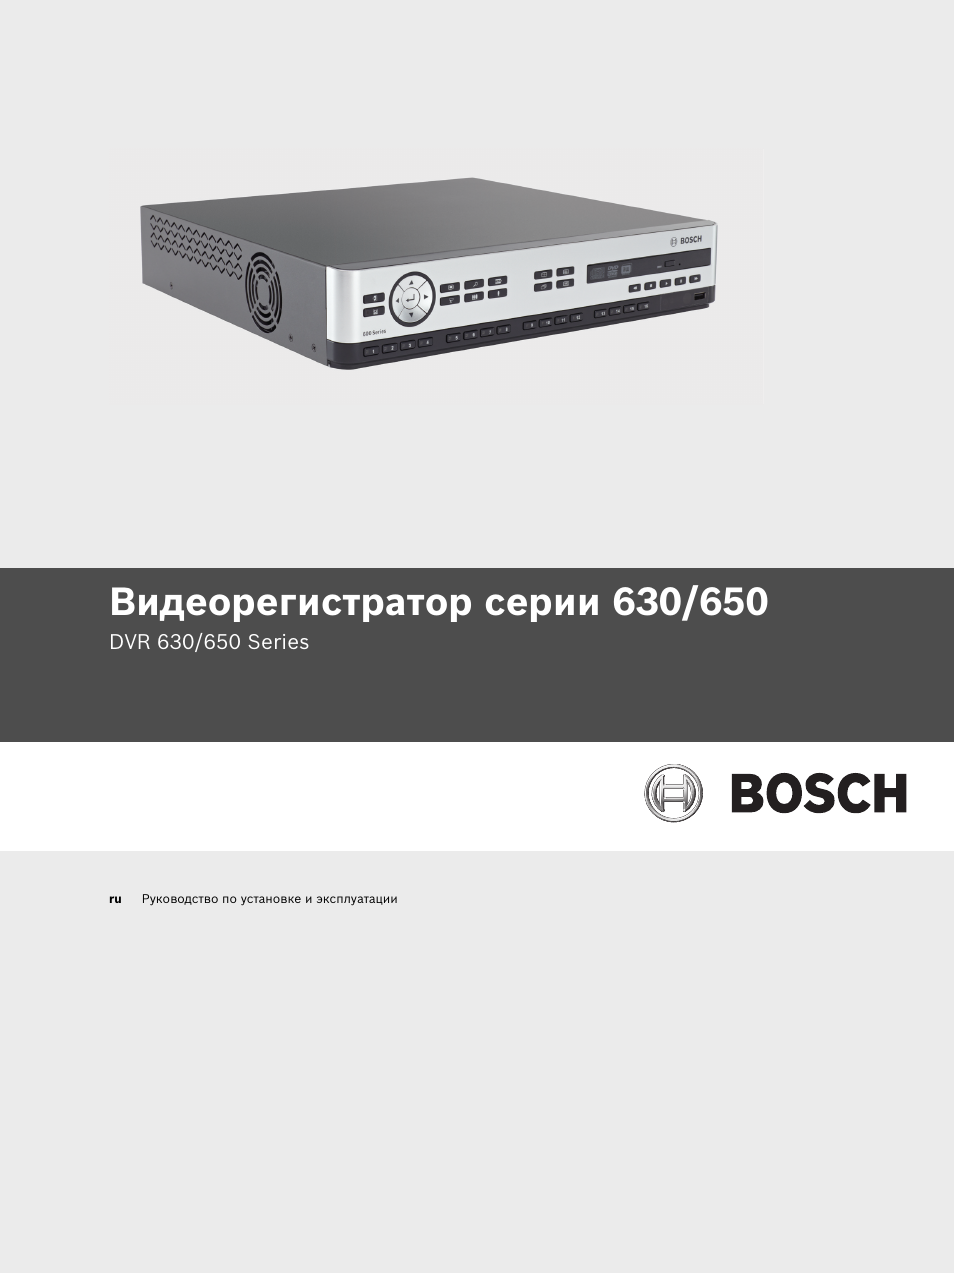 DVR Bosch 600 Series. Bosch DVR 630. Видеорегистратор user manual инструкция. Видеорегистратор Home инструкция. 630 650